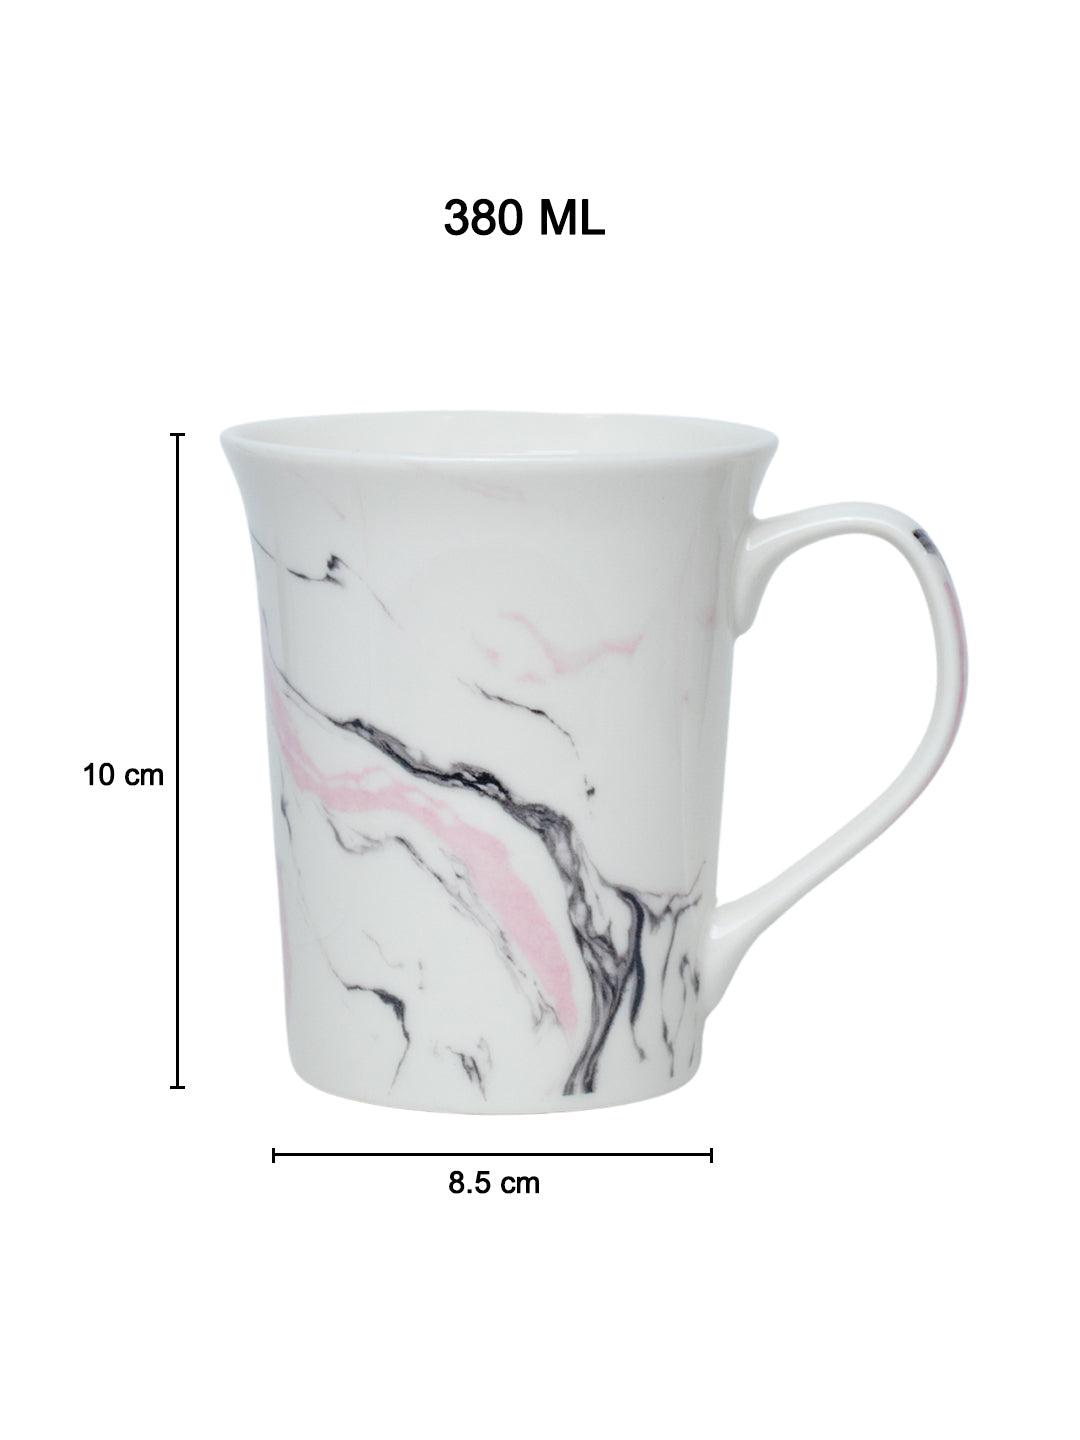 Off White Coffee Mug - 380 Ml, Marble Finish - MARKET 99